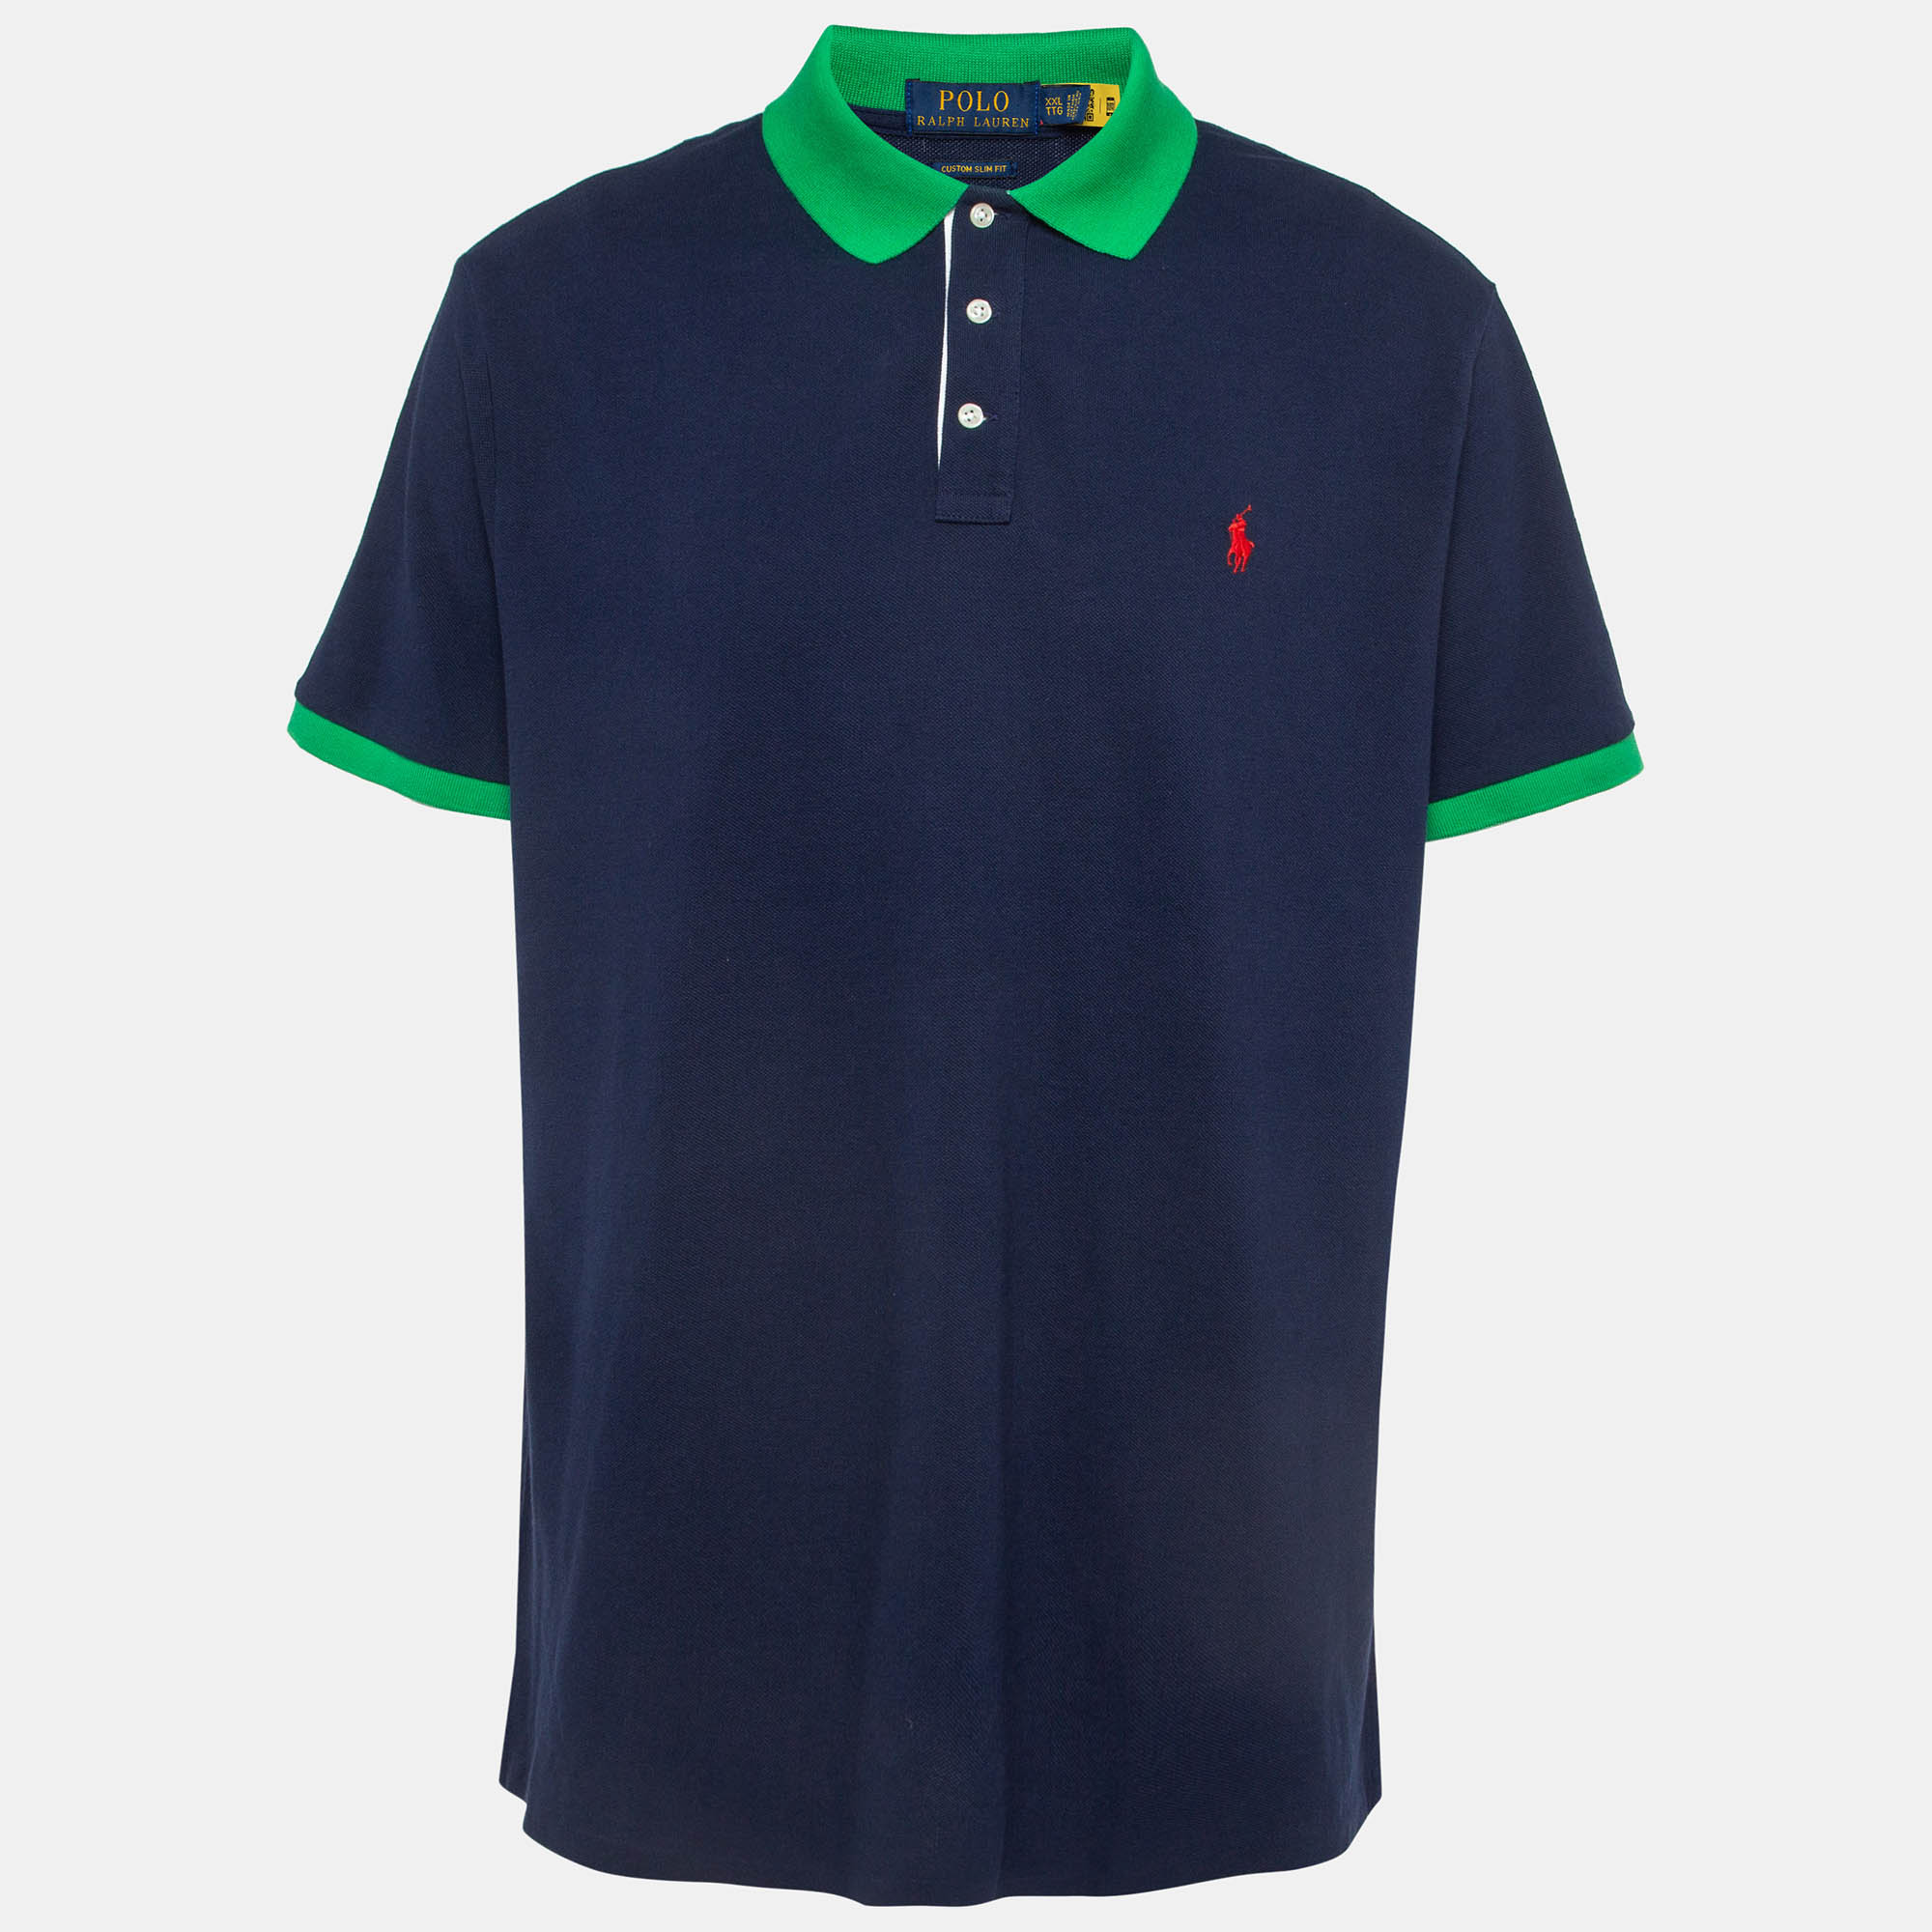 Pre-owned Polo Ralph Lauren Navy Blue Contrast Trim Cotton Pique Polo T-shirt Xxl